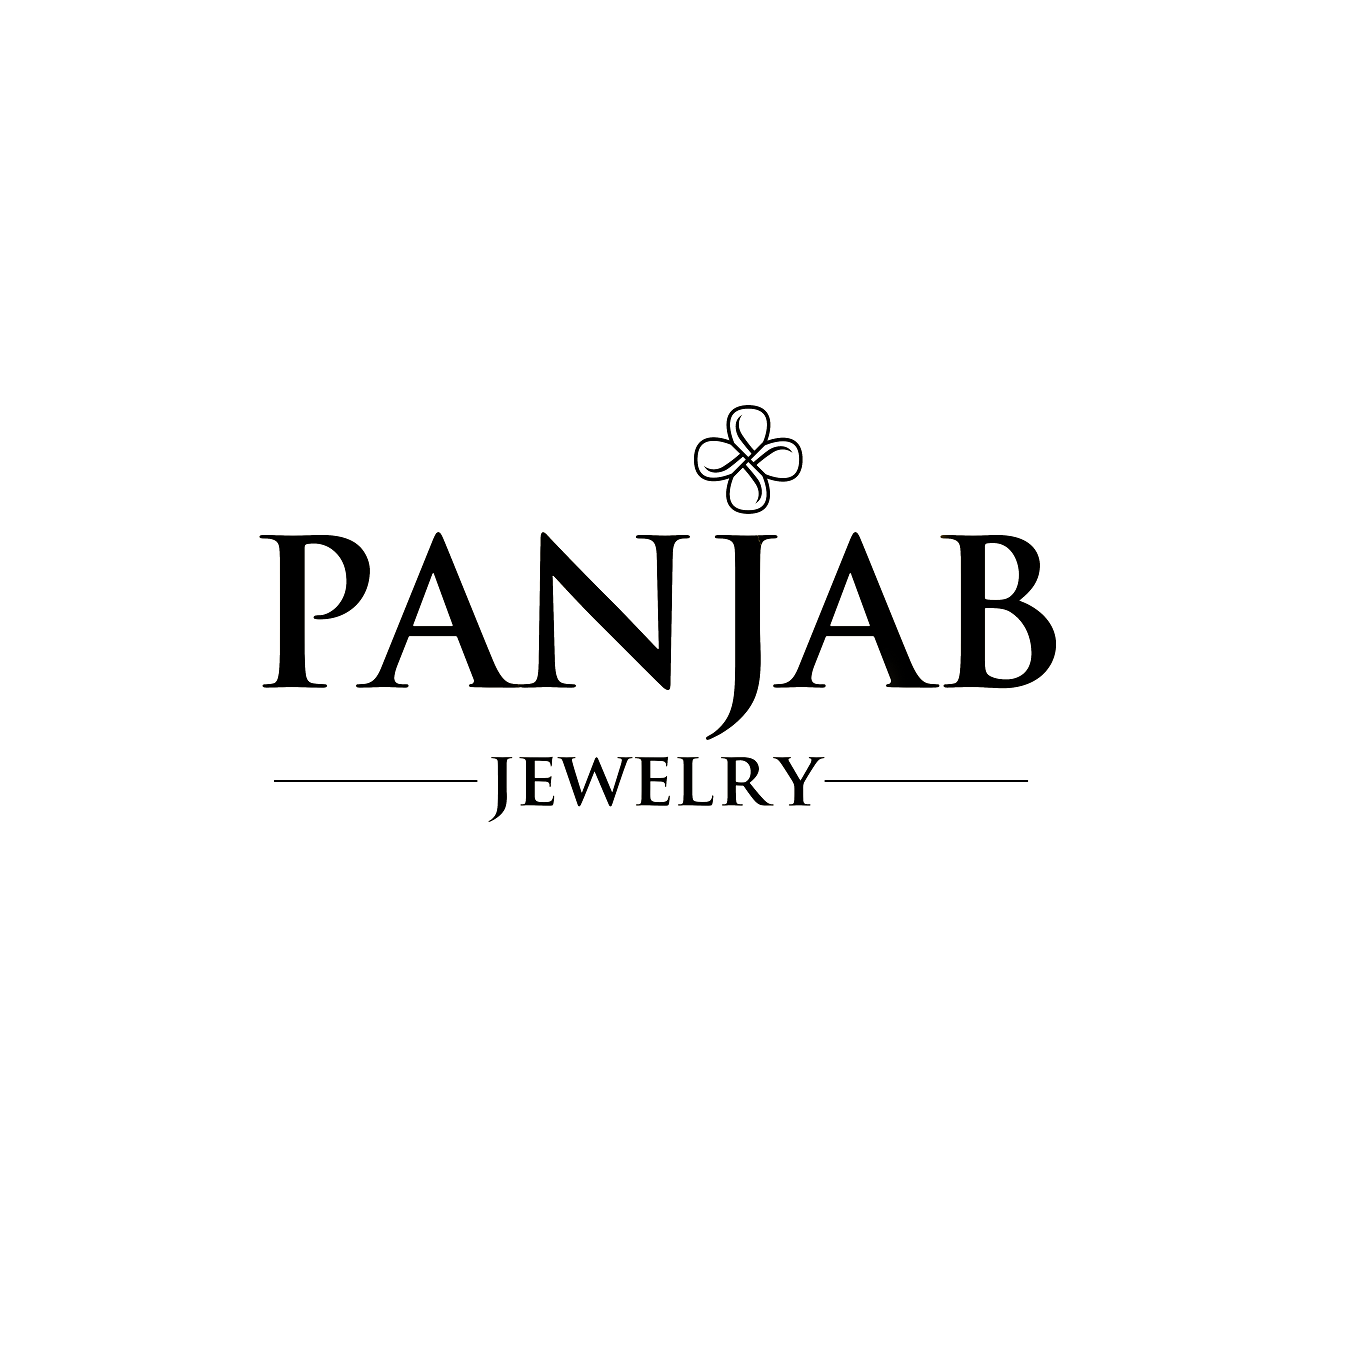 Panjab Jewelry